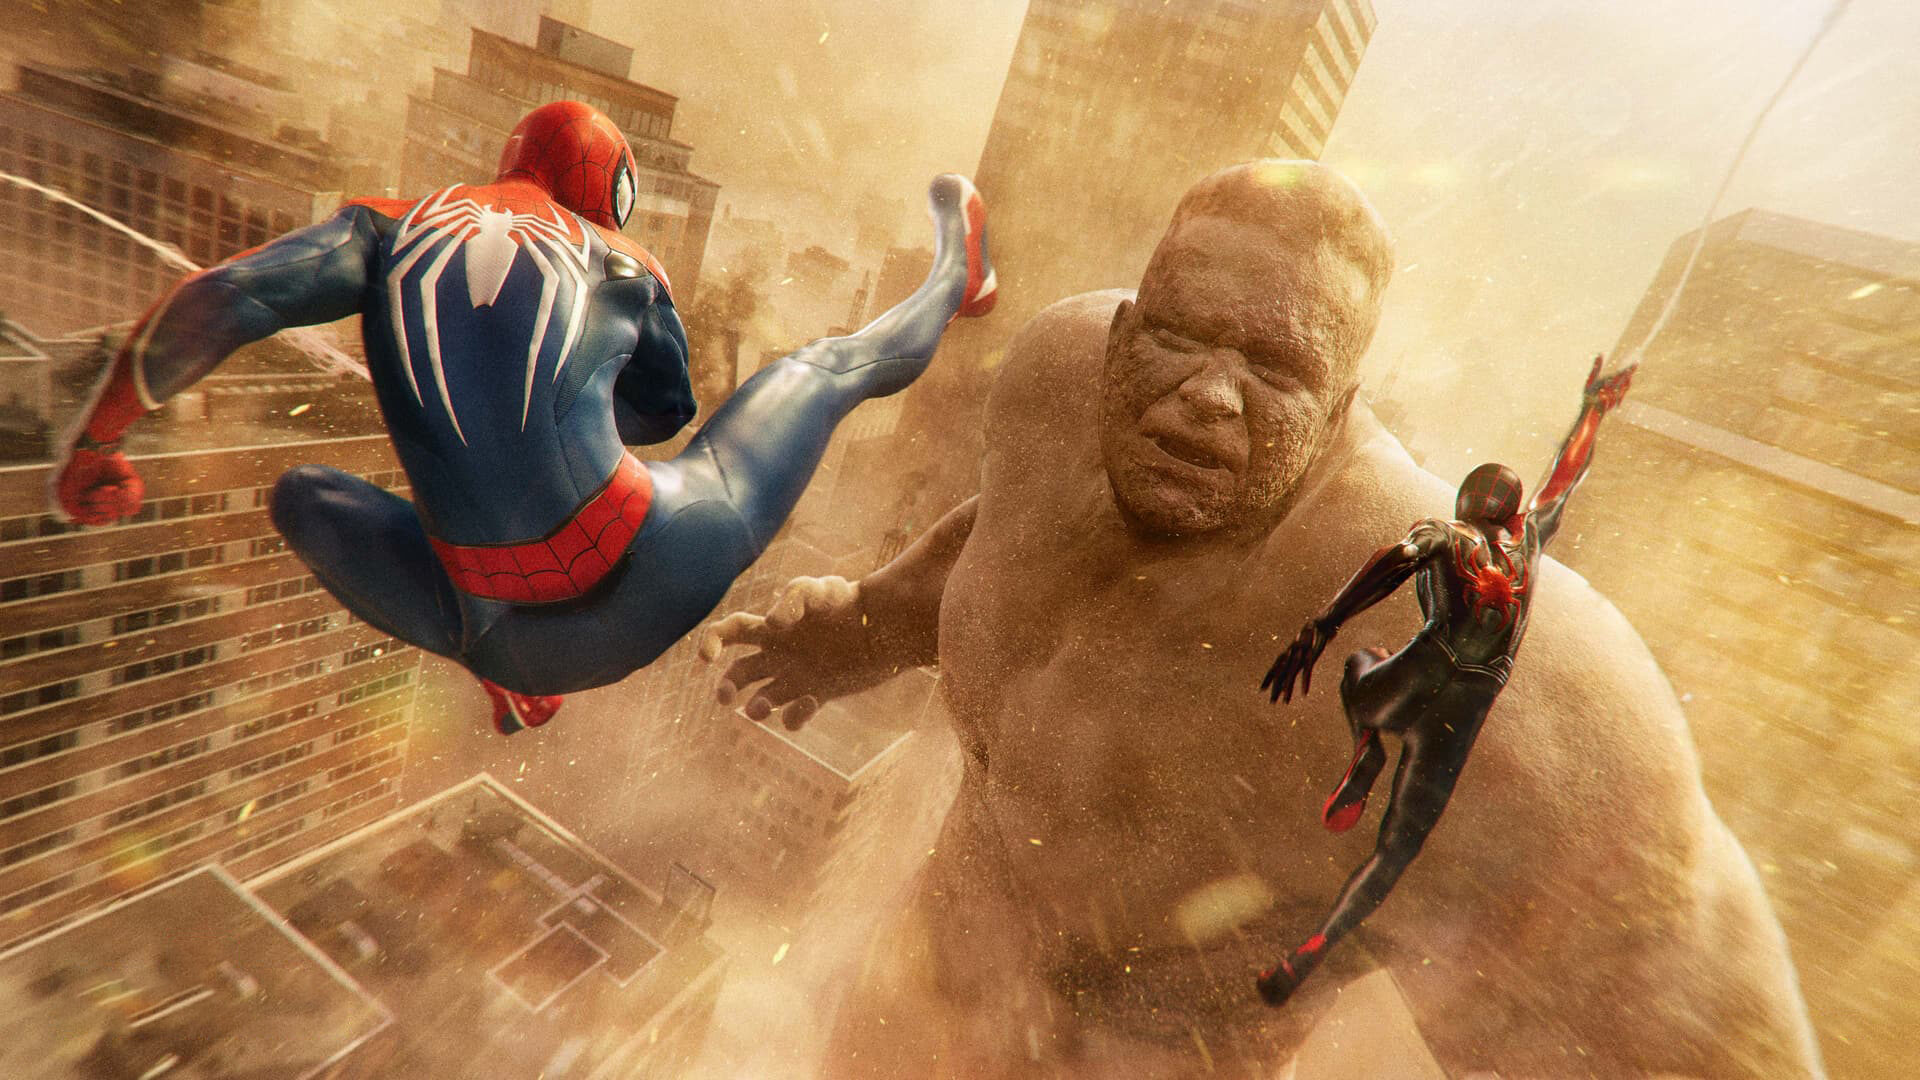 Marvel's Spider-Man 2 recebe novo trailer com Kraven e gameplay